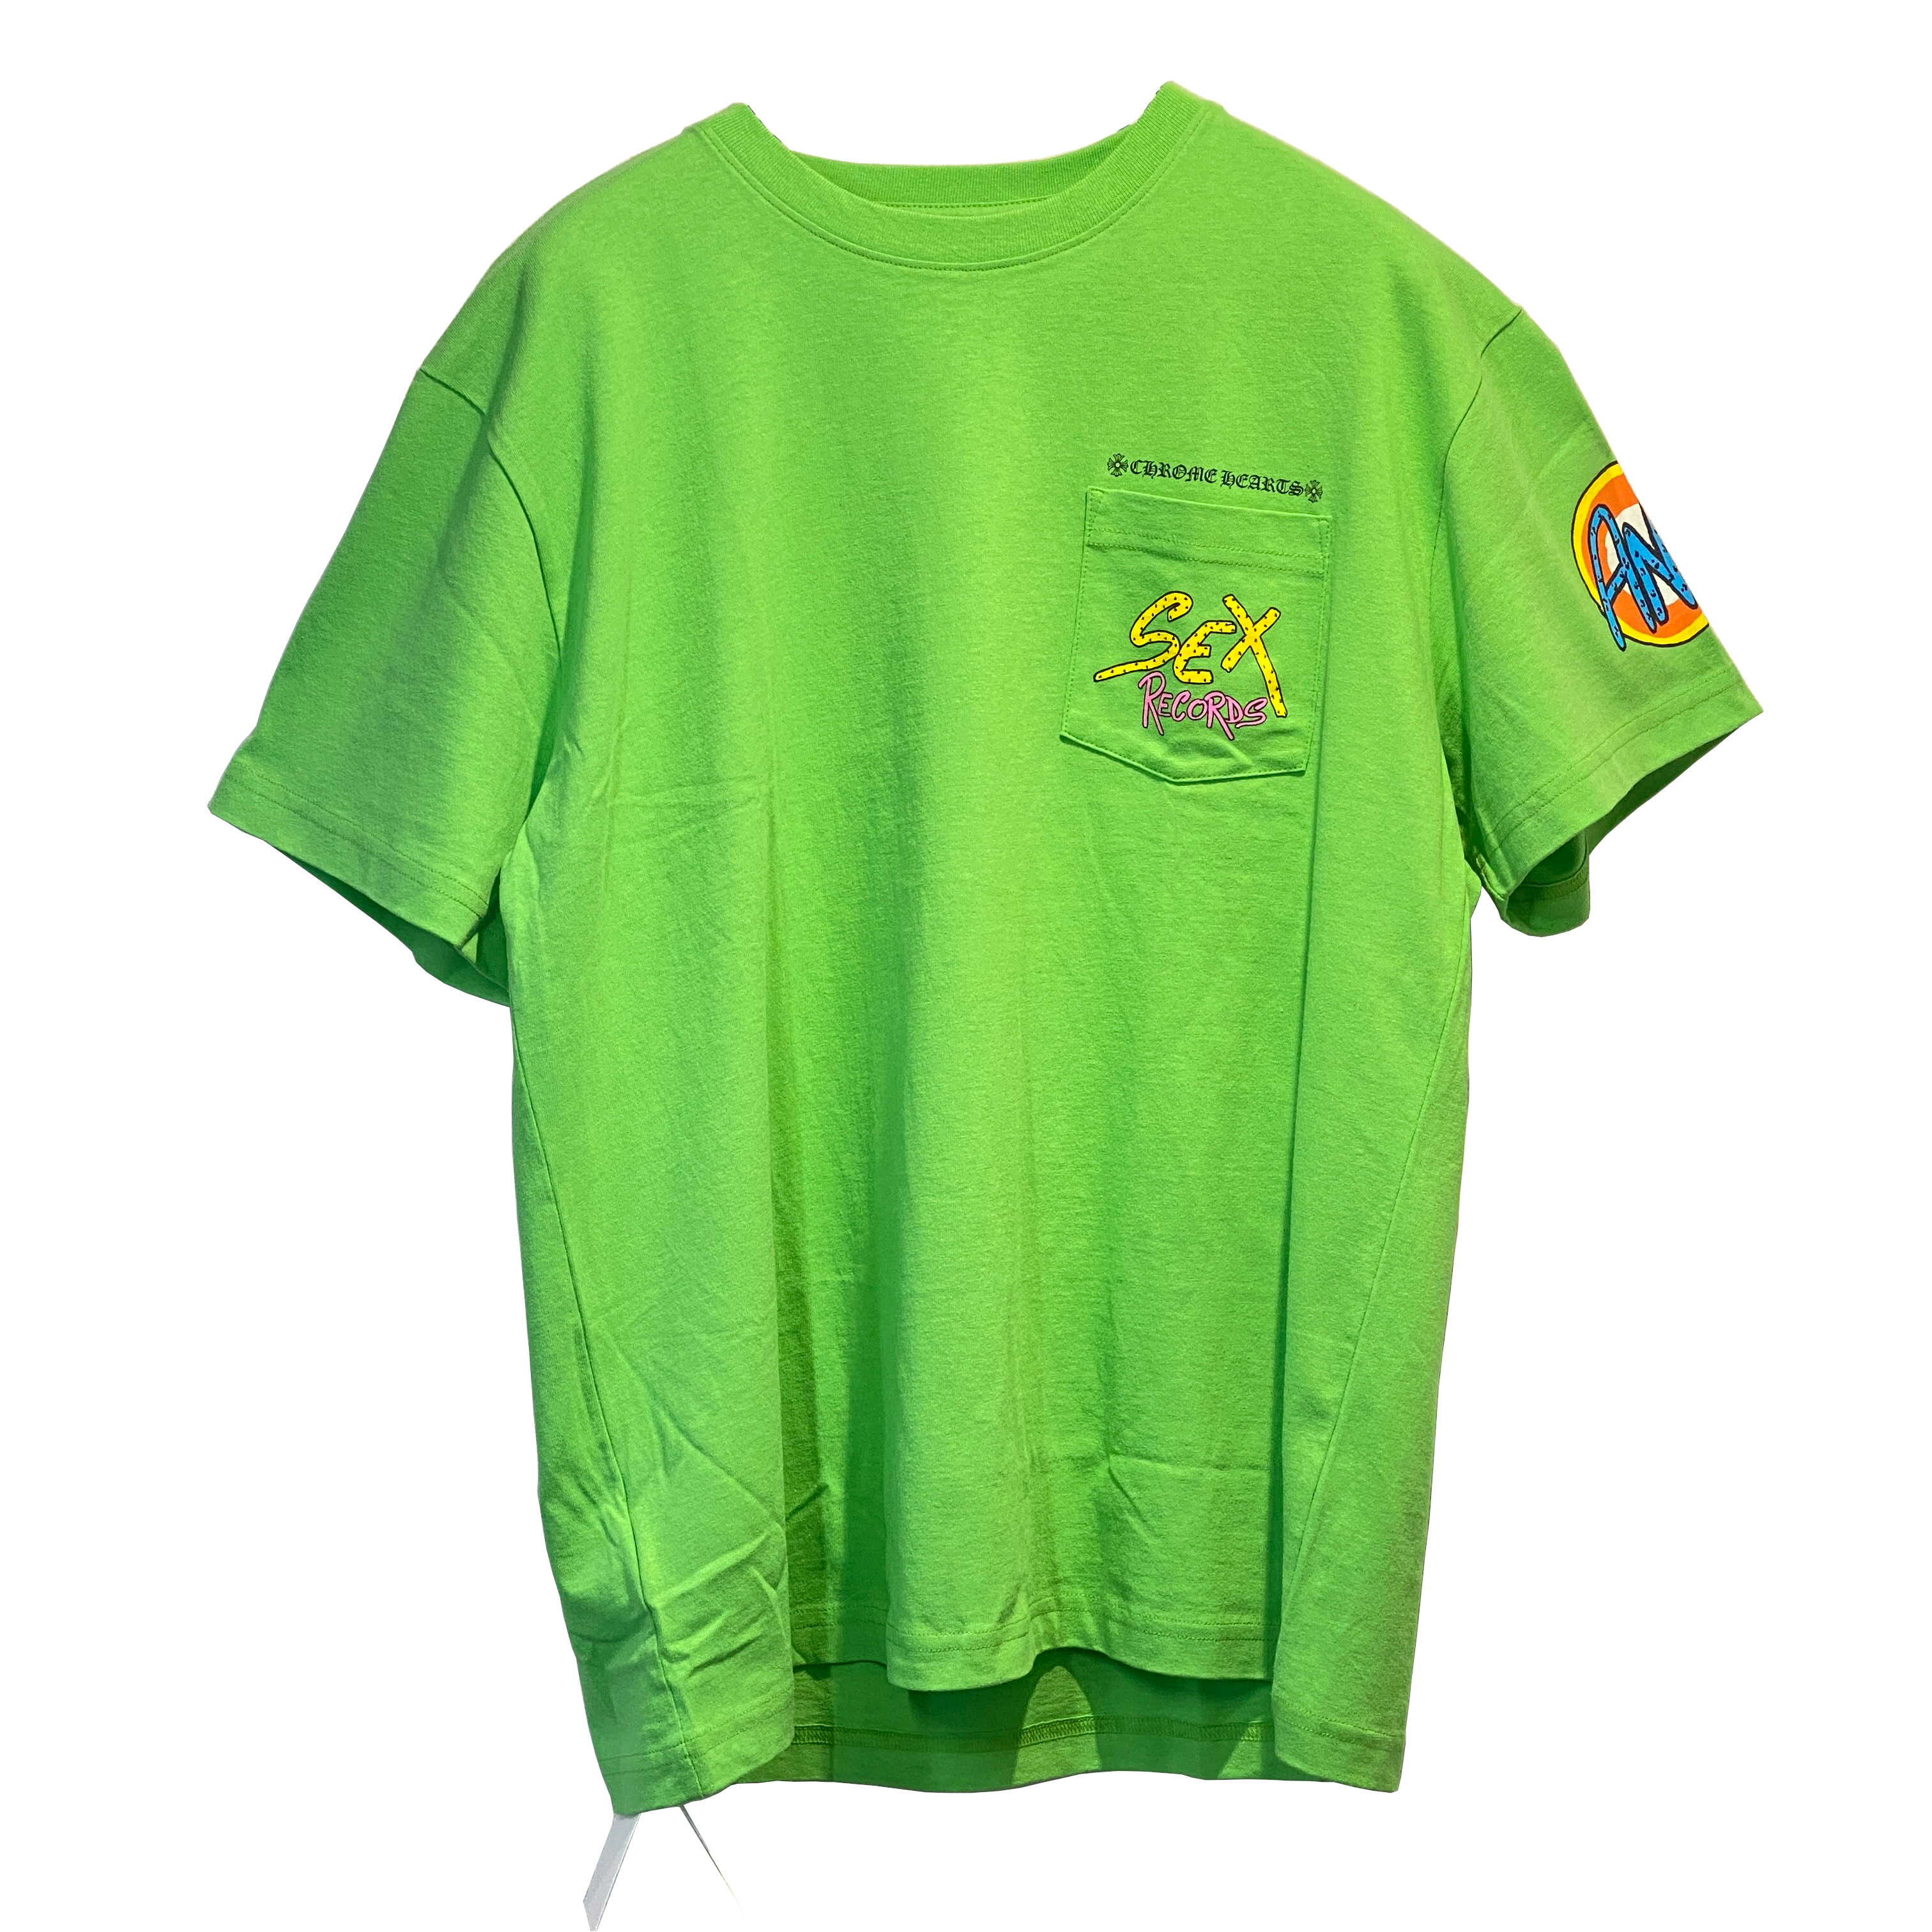 Chrome Hearts(クロムハーツ)クロムハーツ マッティボーイ T SS SEX RECORDS XL 半袖Tシャツ | 66666 |  ゴローズ(goro's)買取 販売専門店